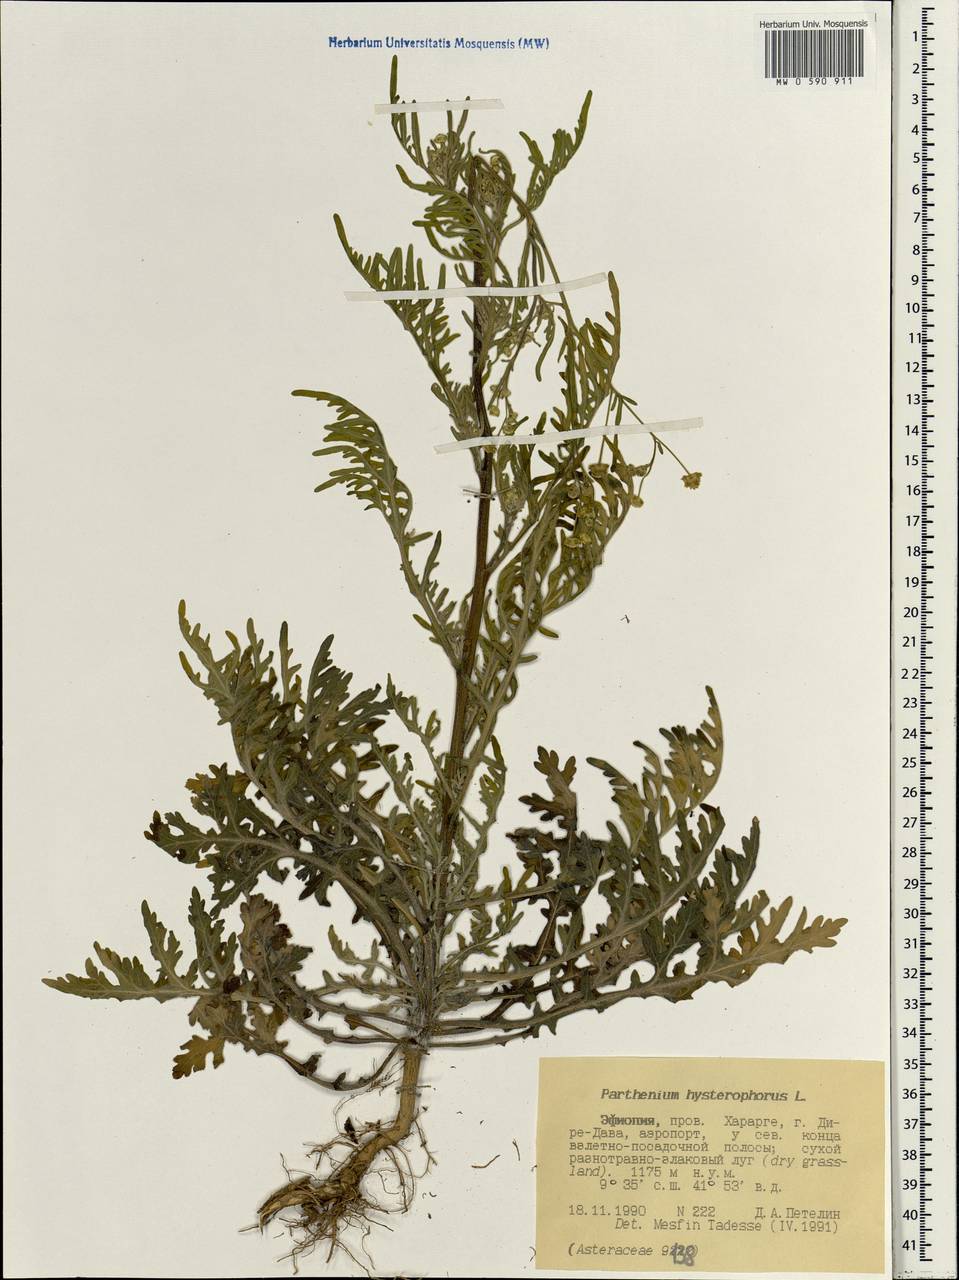 Parthenium hysterophorus L., Africa (AFR) (Ethiopia)